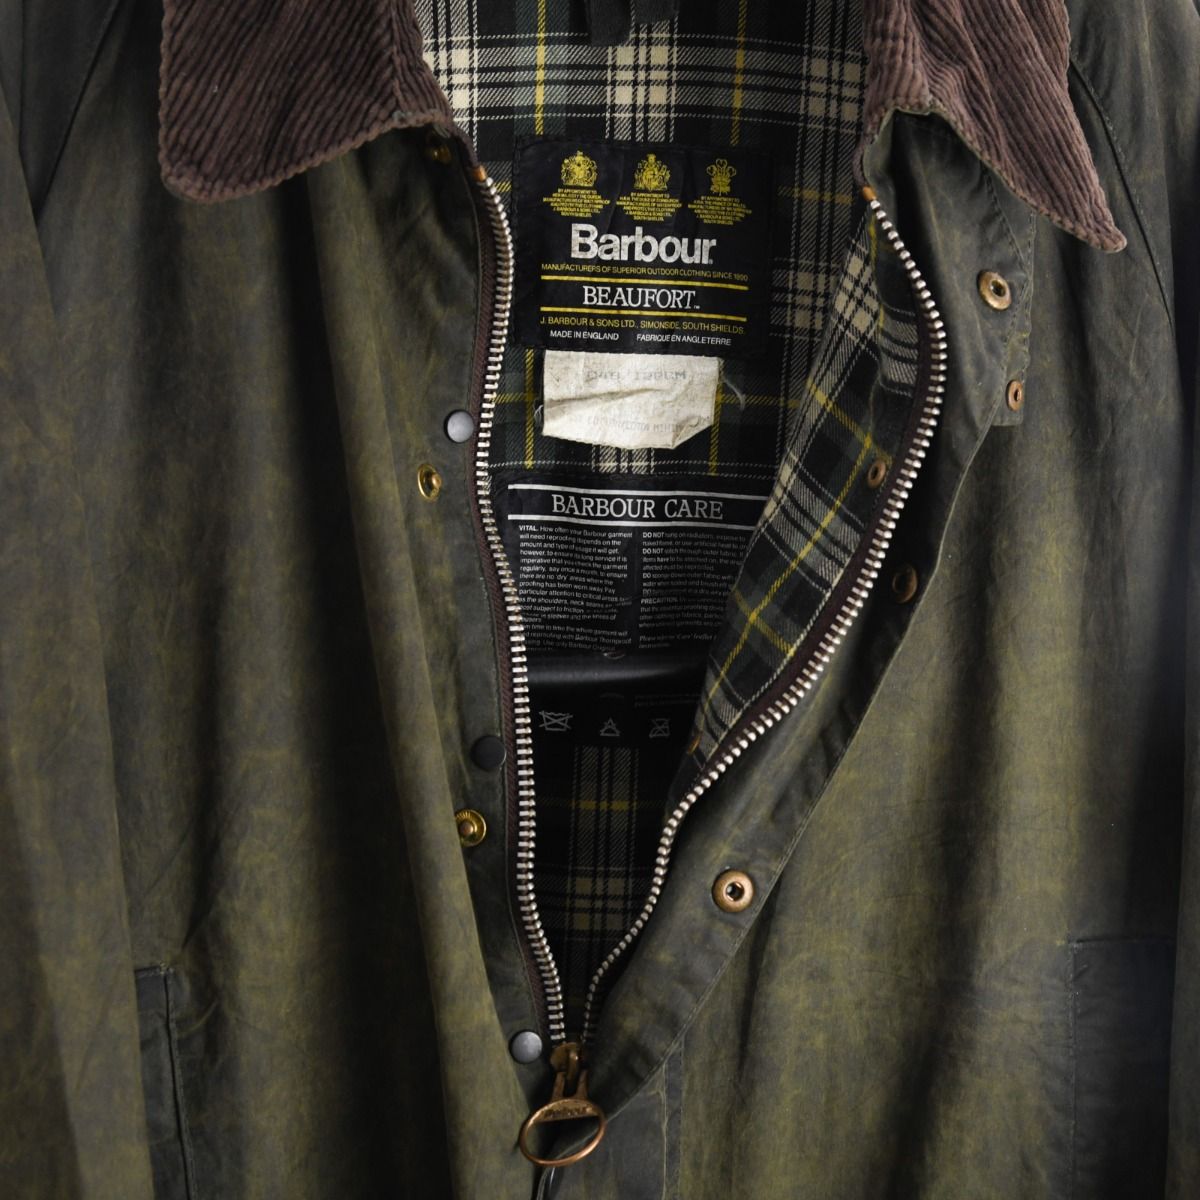 Barbour 1990s Beaufort Wax Cotton Green Jacket